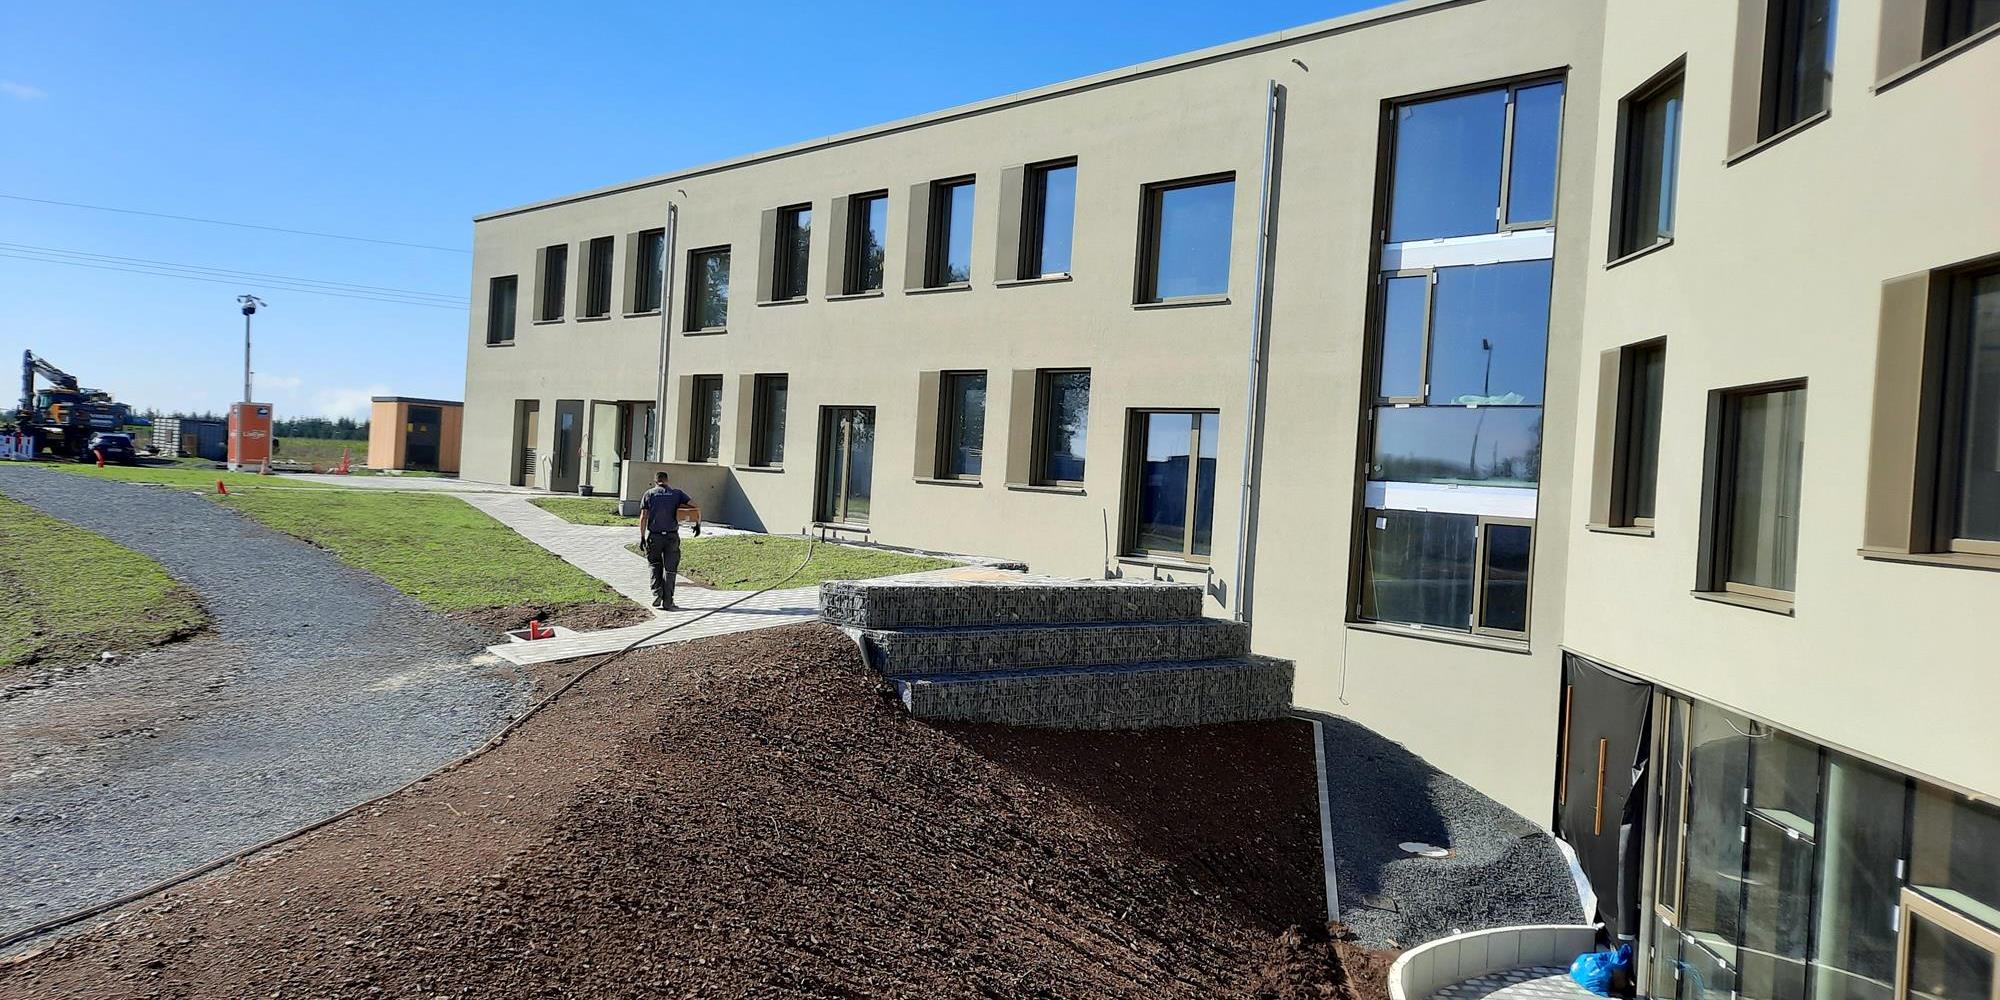 Nouvelle construction d’un campus scolaire à Eschdorf